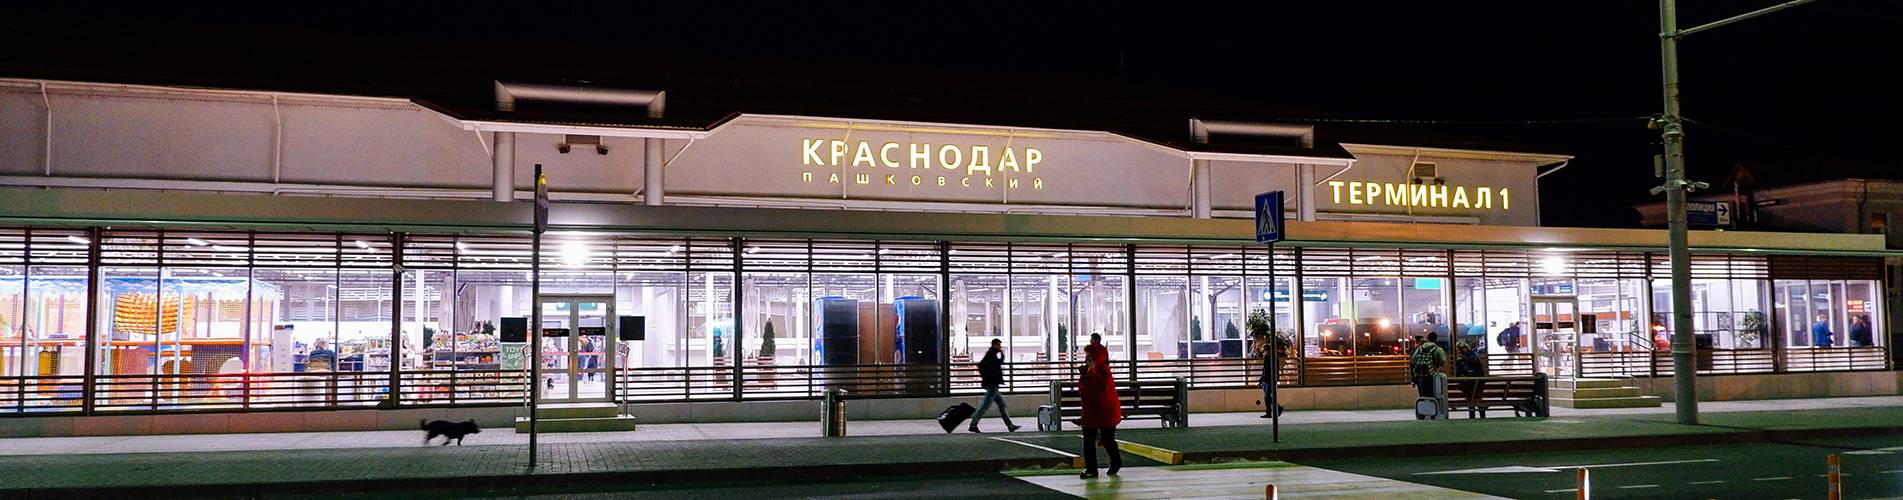 Международный аэропорт краснодара пашковский: онлайн табло